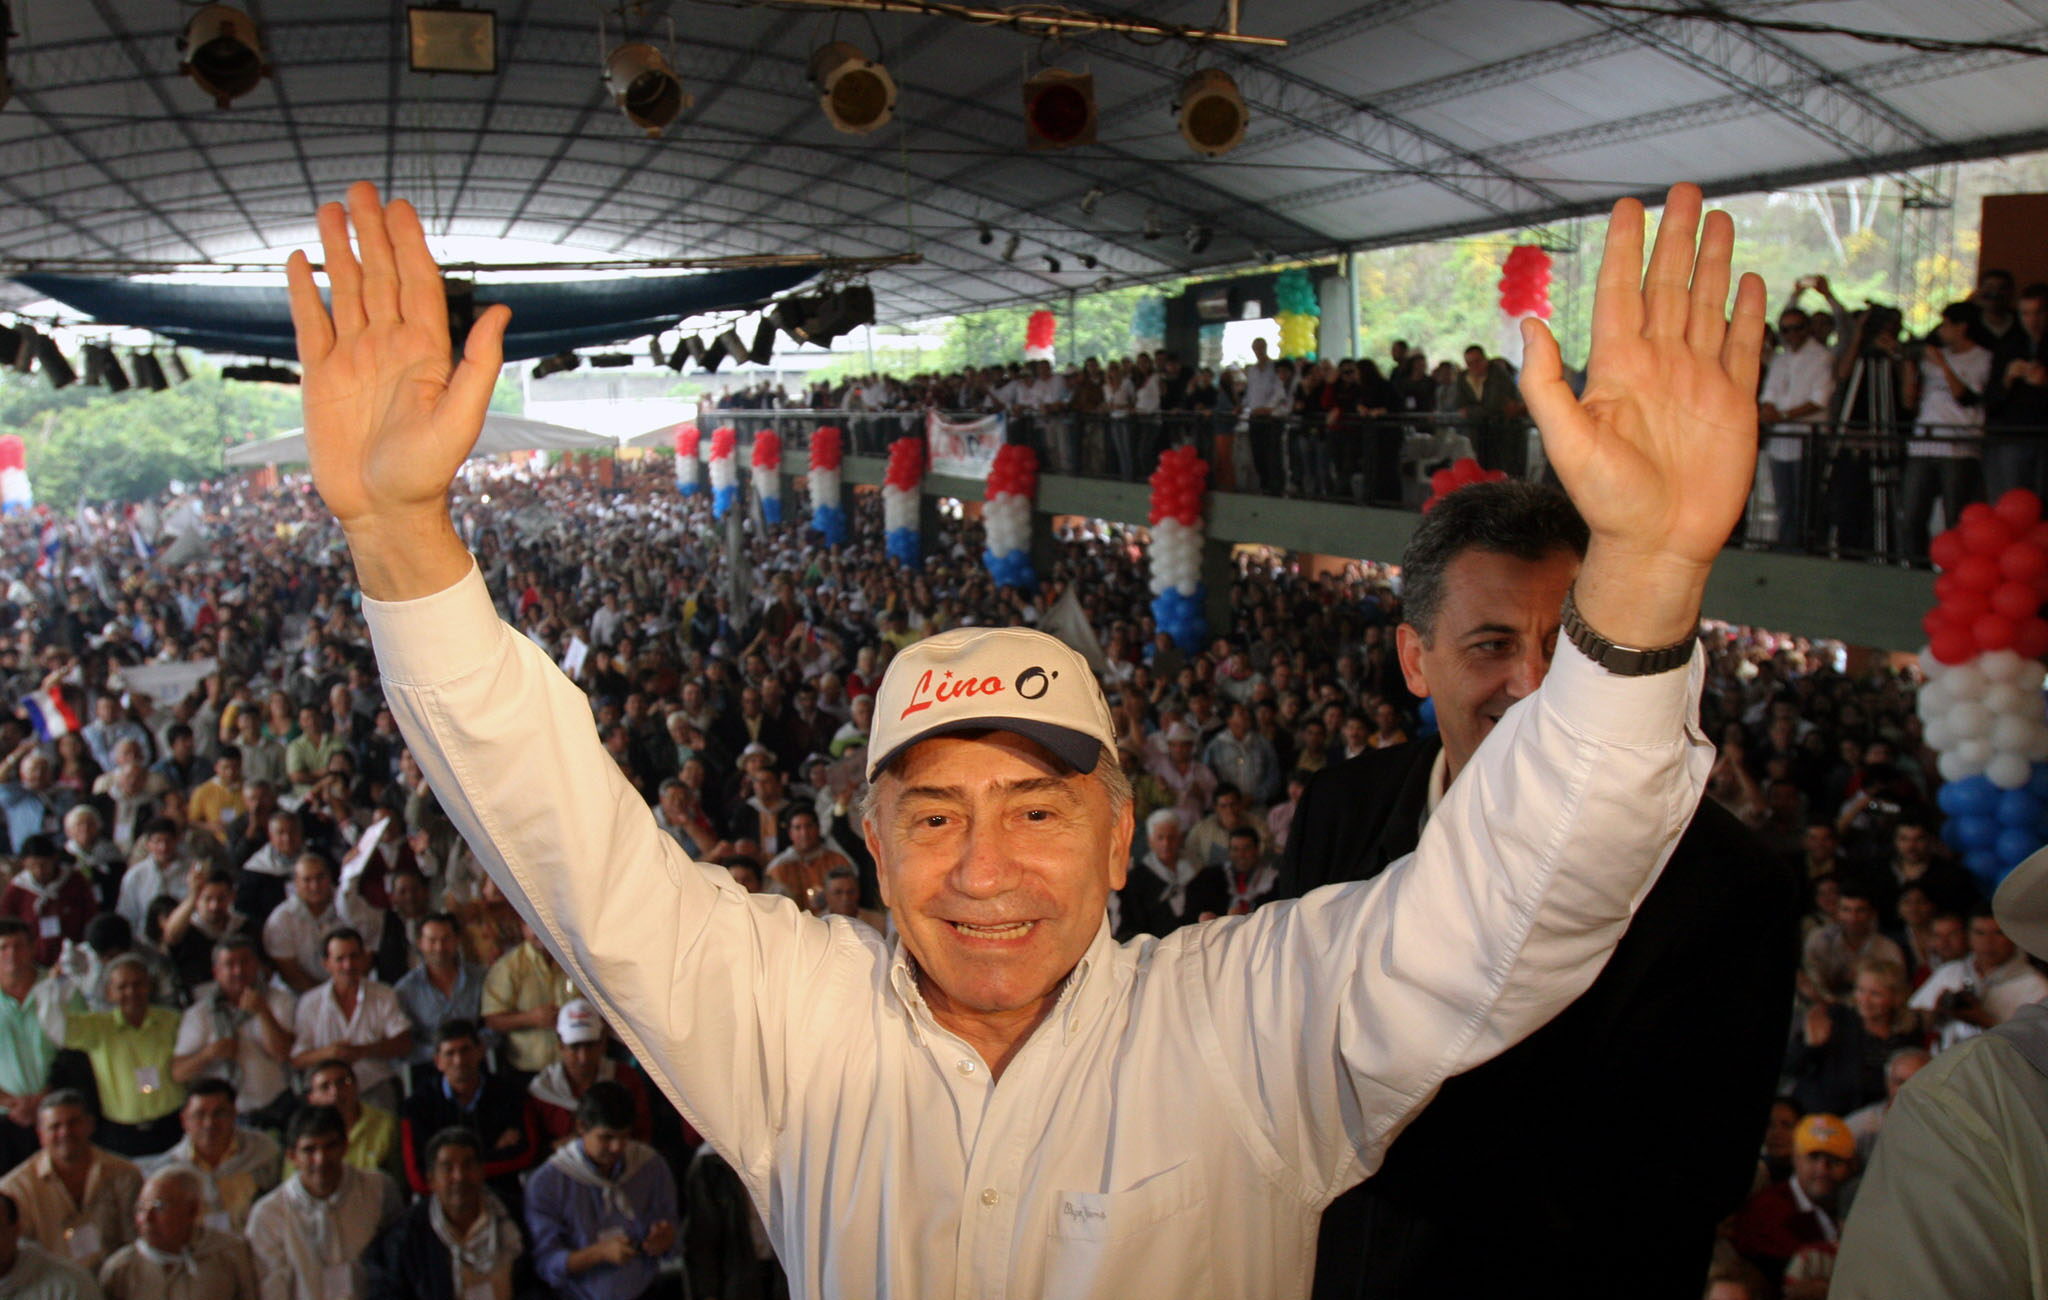 ¿Quién era el candidato presidencial paraguayo Lino Oviedo?